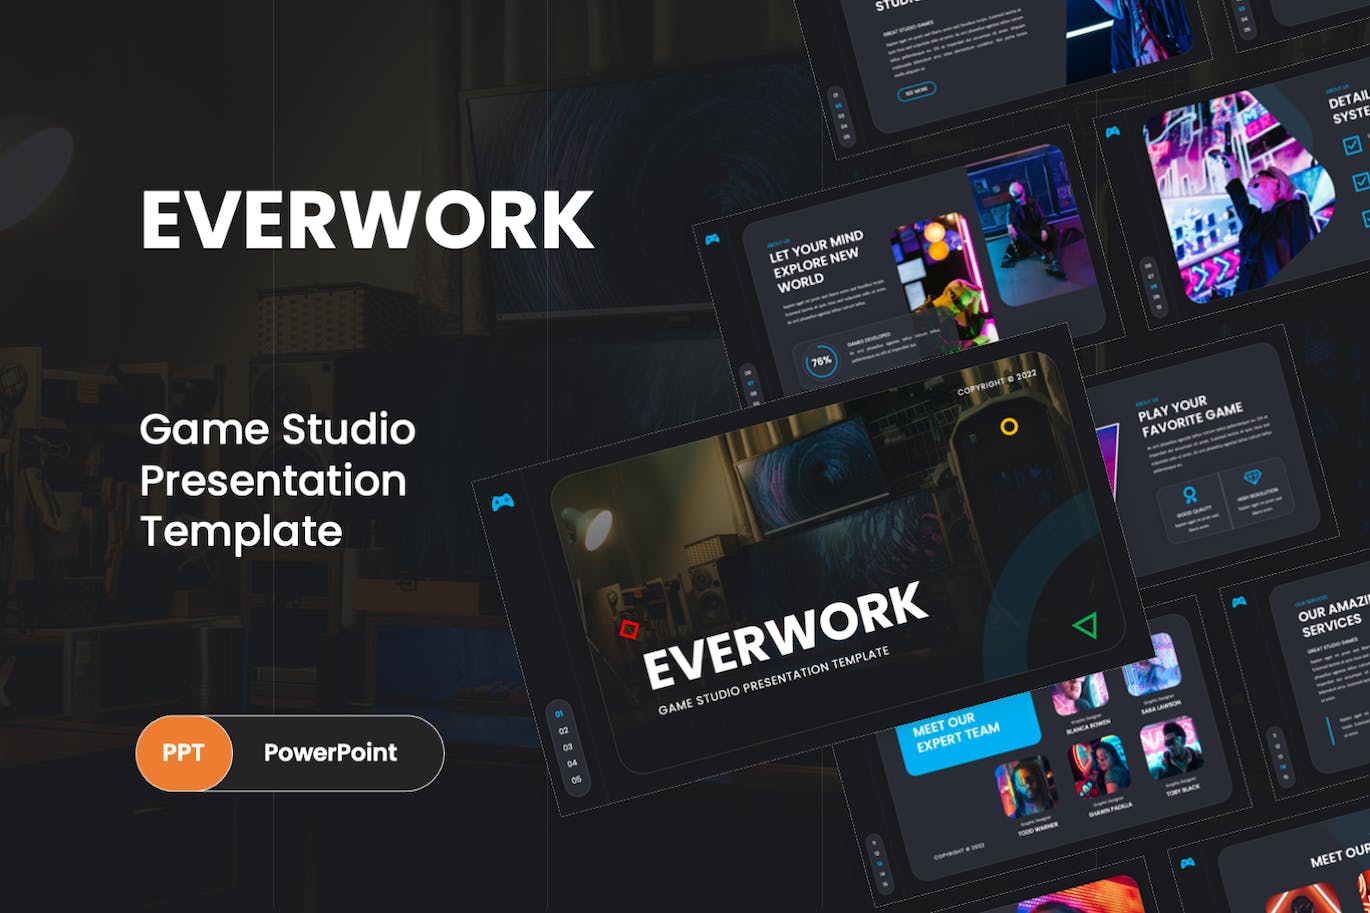 游戏工作室Powerpoint模板下载 Everwork – Gaming Studio PowerPoint Template 幻灯图表 第1张